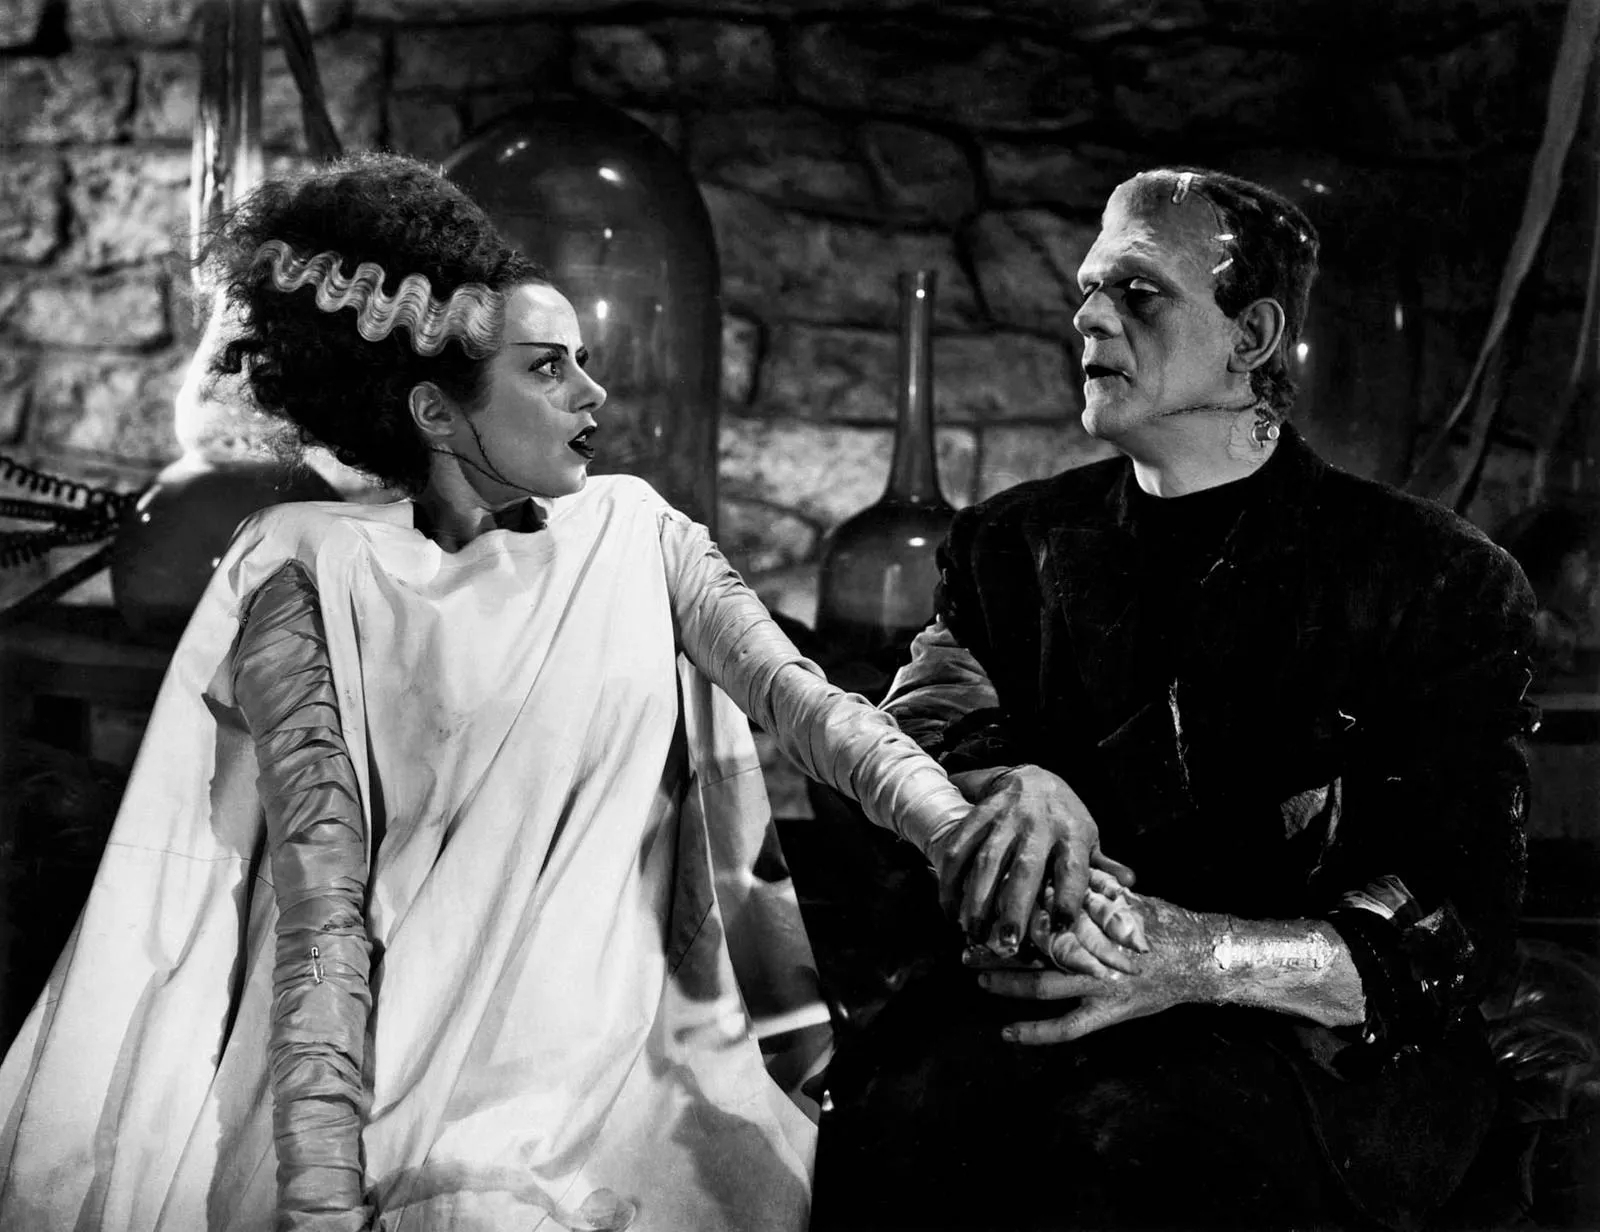 The Bride: Christian Bale má vystupovat jako Frankenstein v novém monster filmu | Fandíme filmu